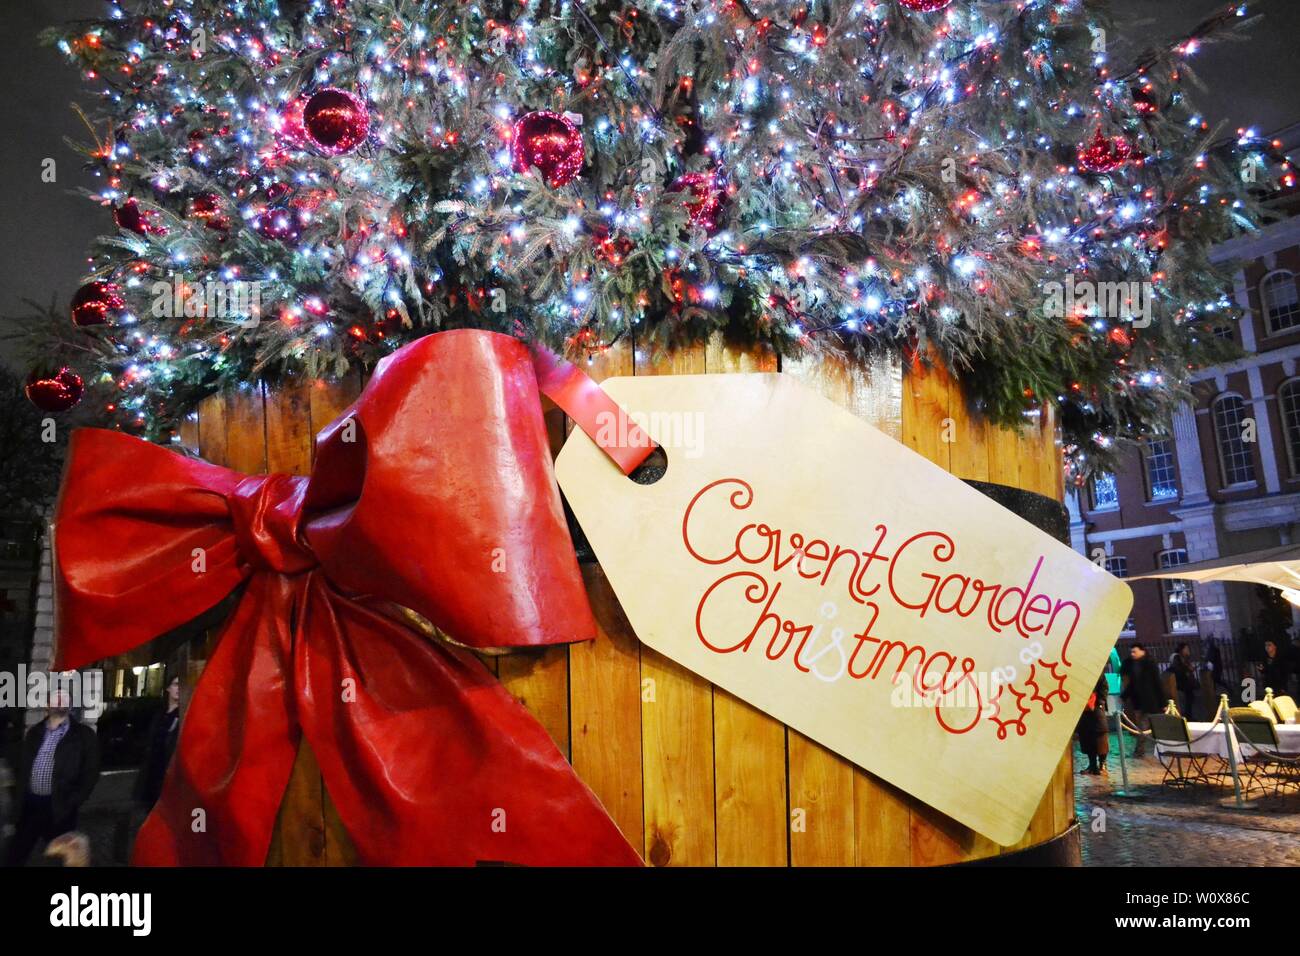 Londres/UK - 27 novembre 2013 : vue d'arbre de Noël traditionnel de la Covent Garden Square dans un tonneau en bois décoré d'arc rouge. Banque D'Images